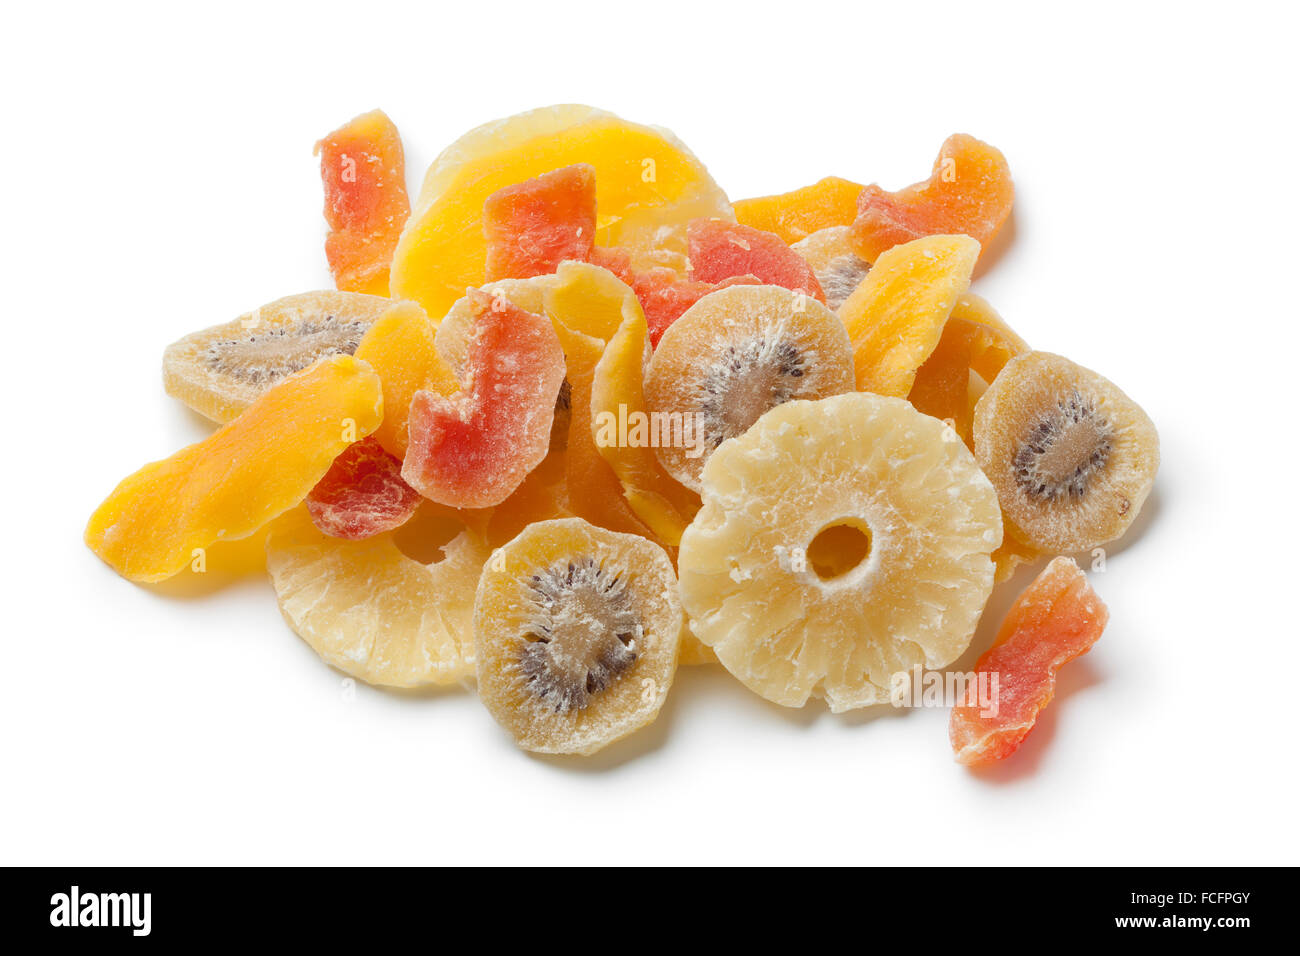 Séché et fruits confits sur fond blanc Banque D'Images